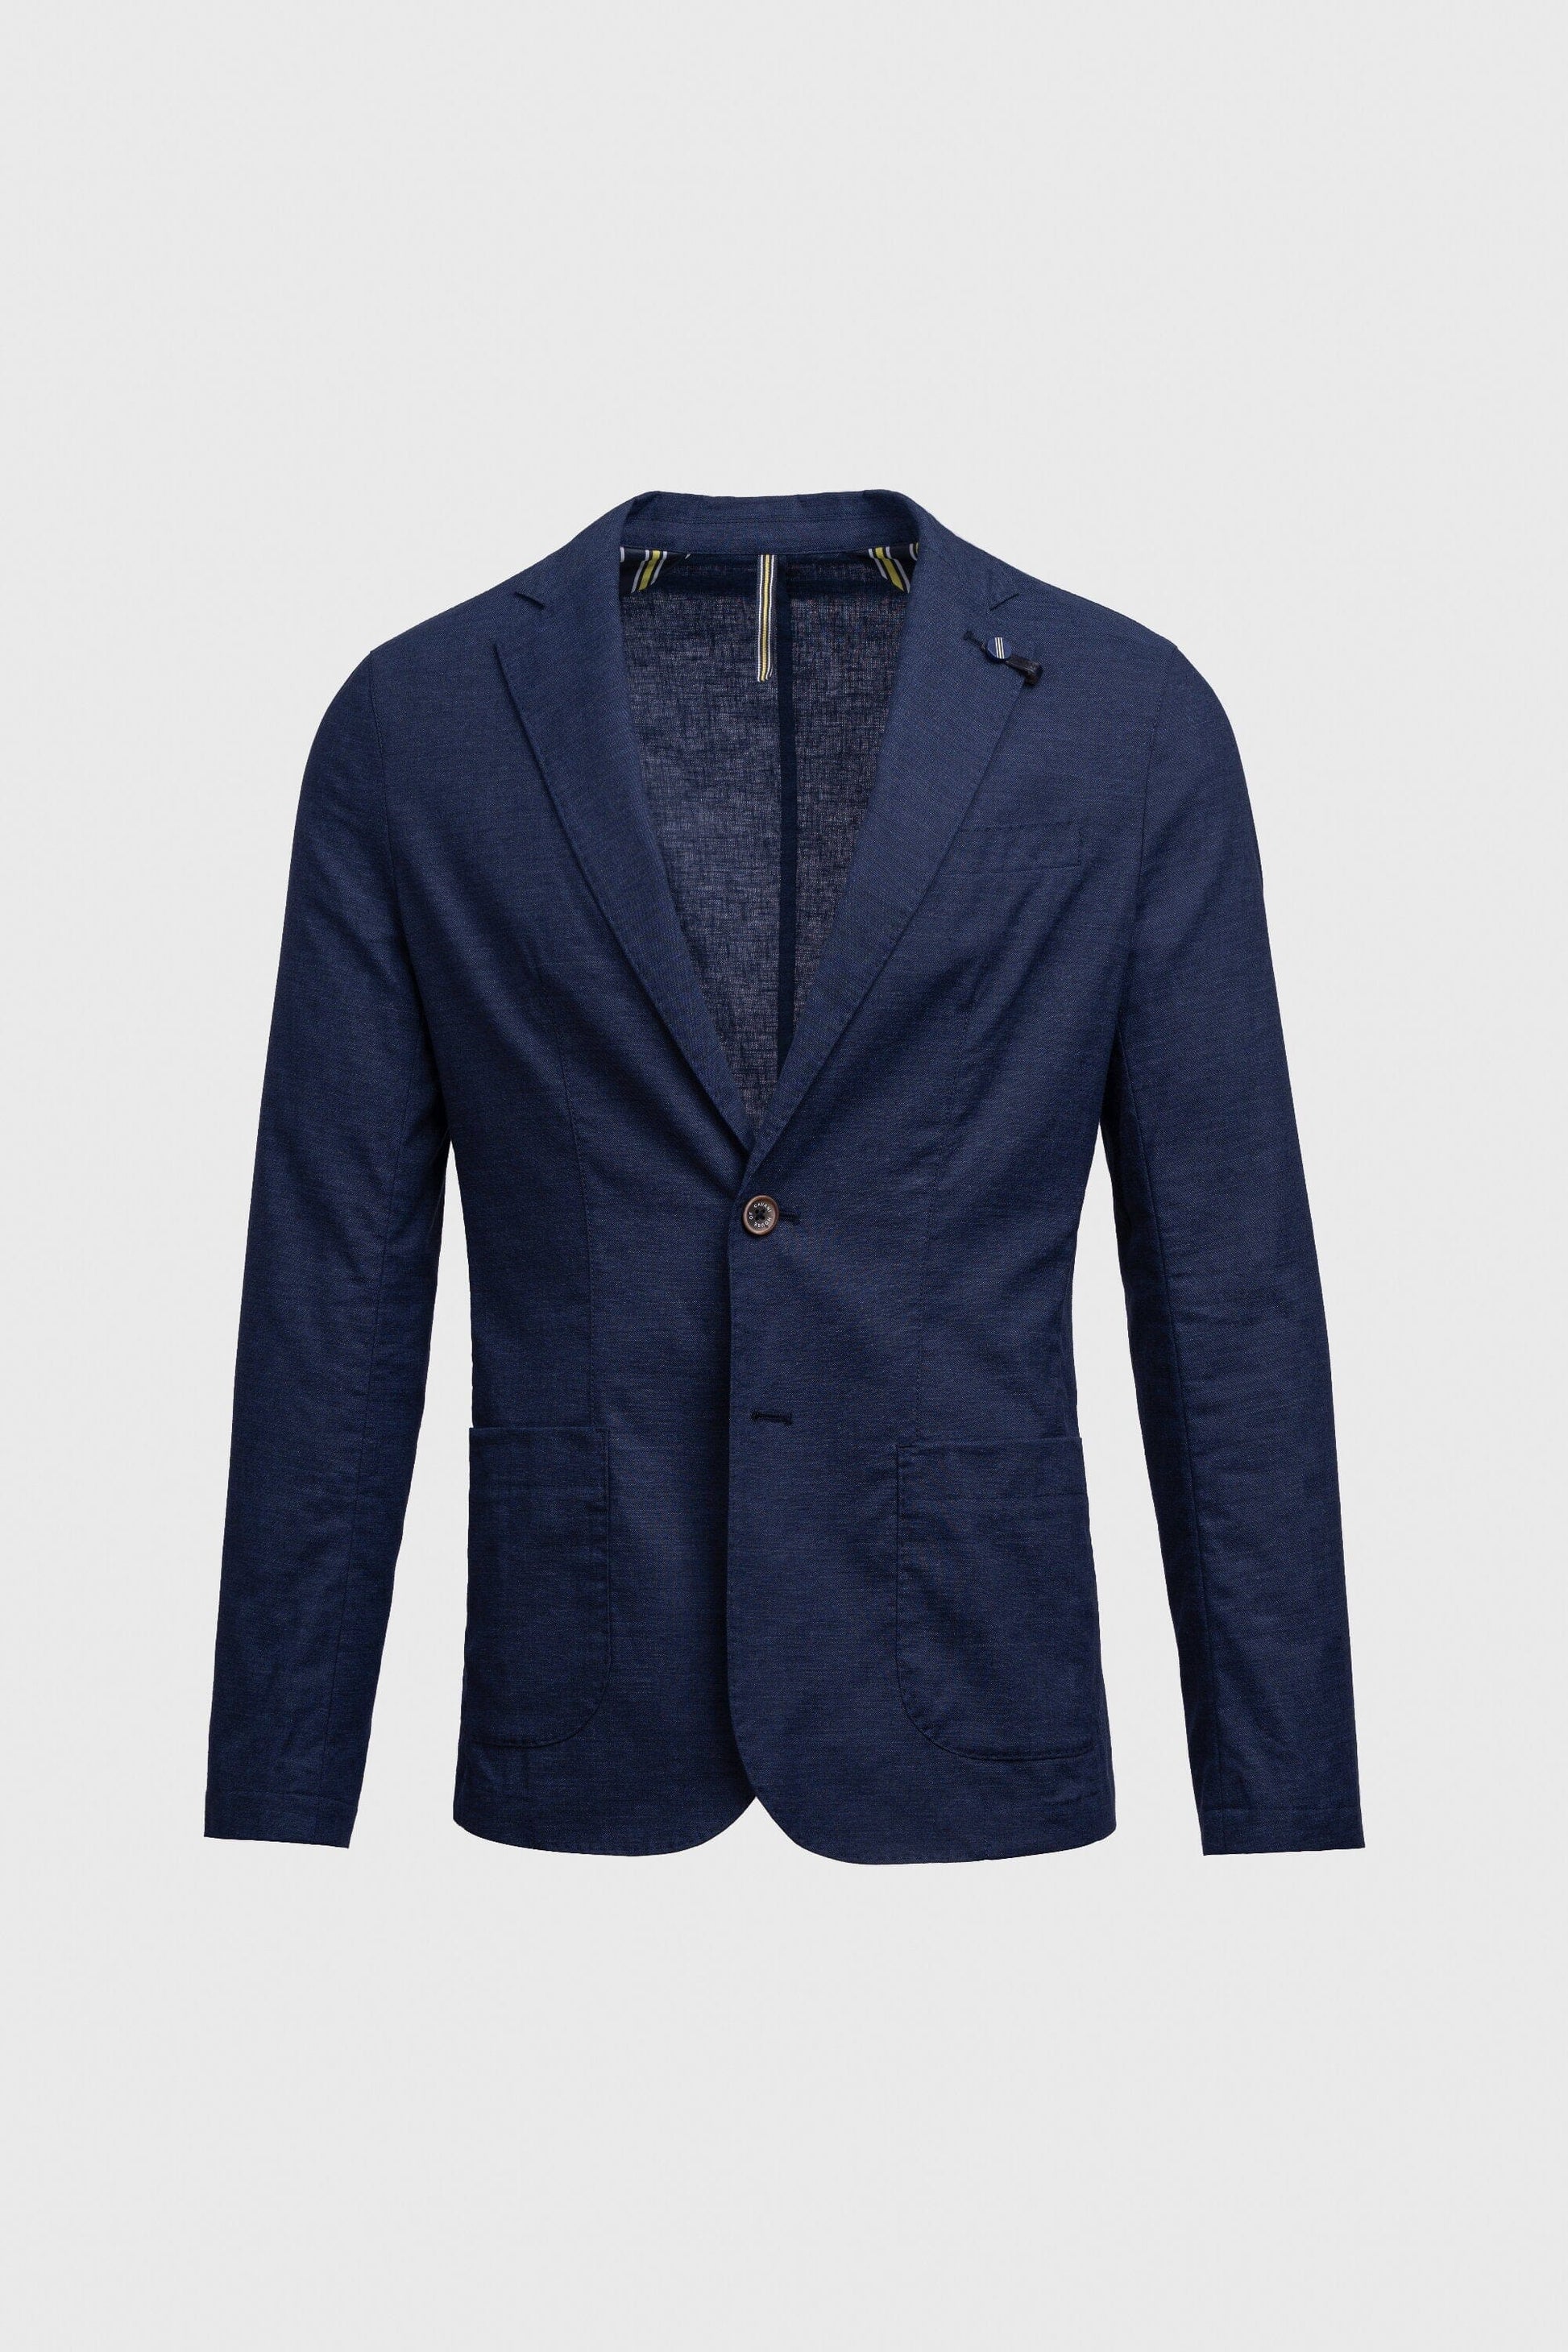 Lightweight Navy Linen Blazer - STOCK CLEARANCE - Blazers & Jackets Sale - - THREADPEPPER